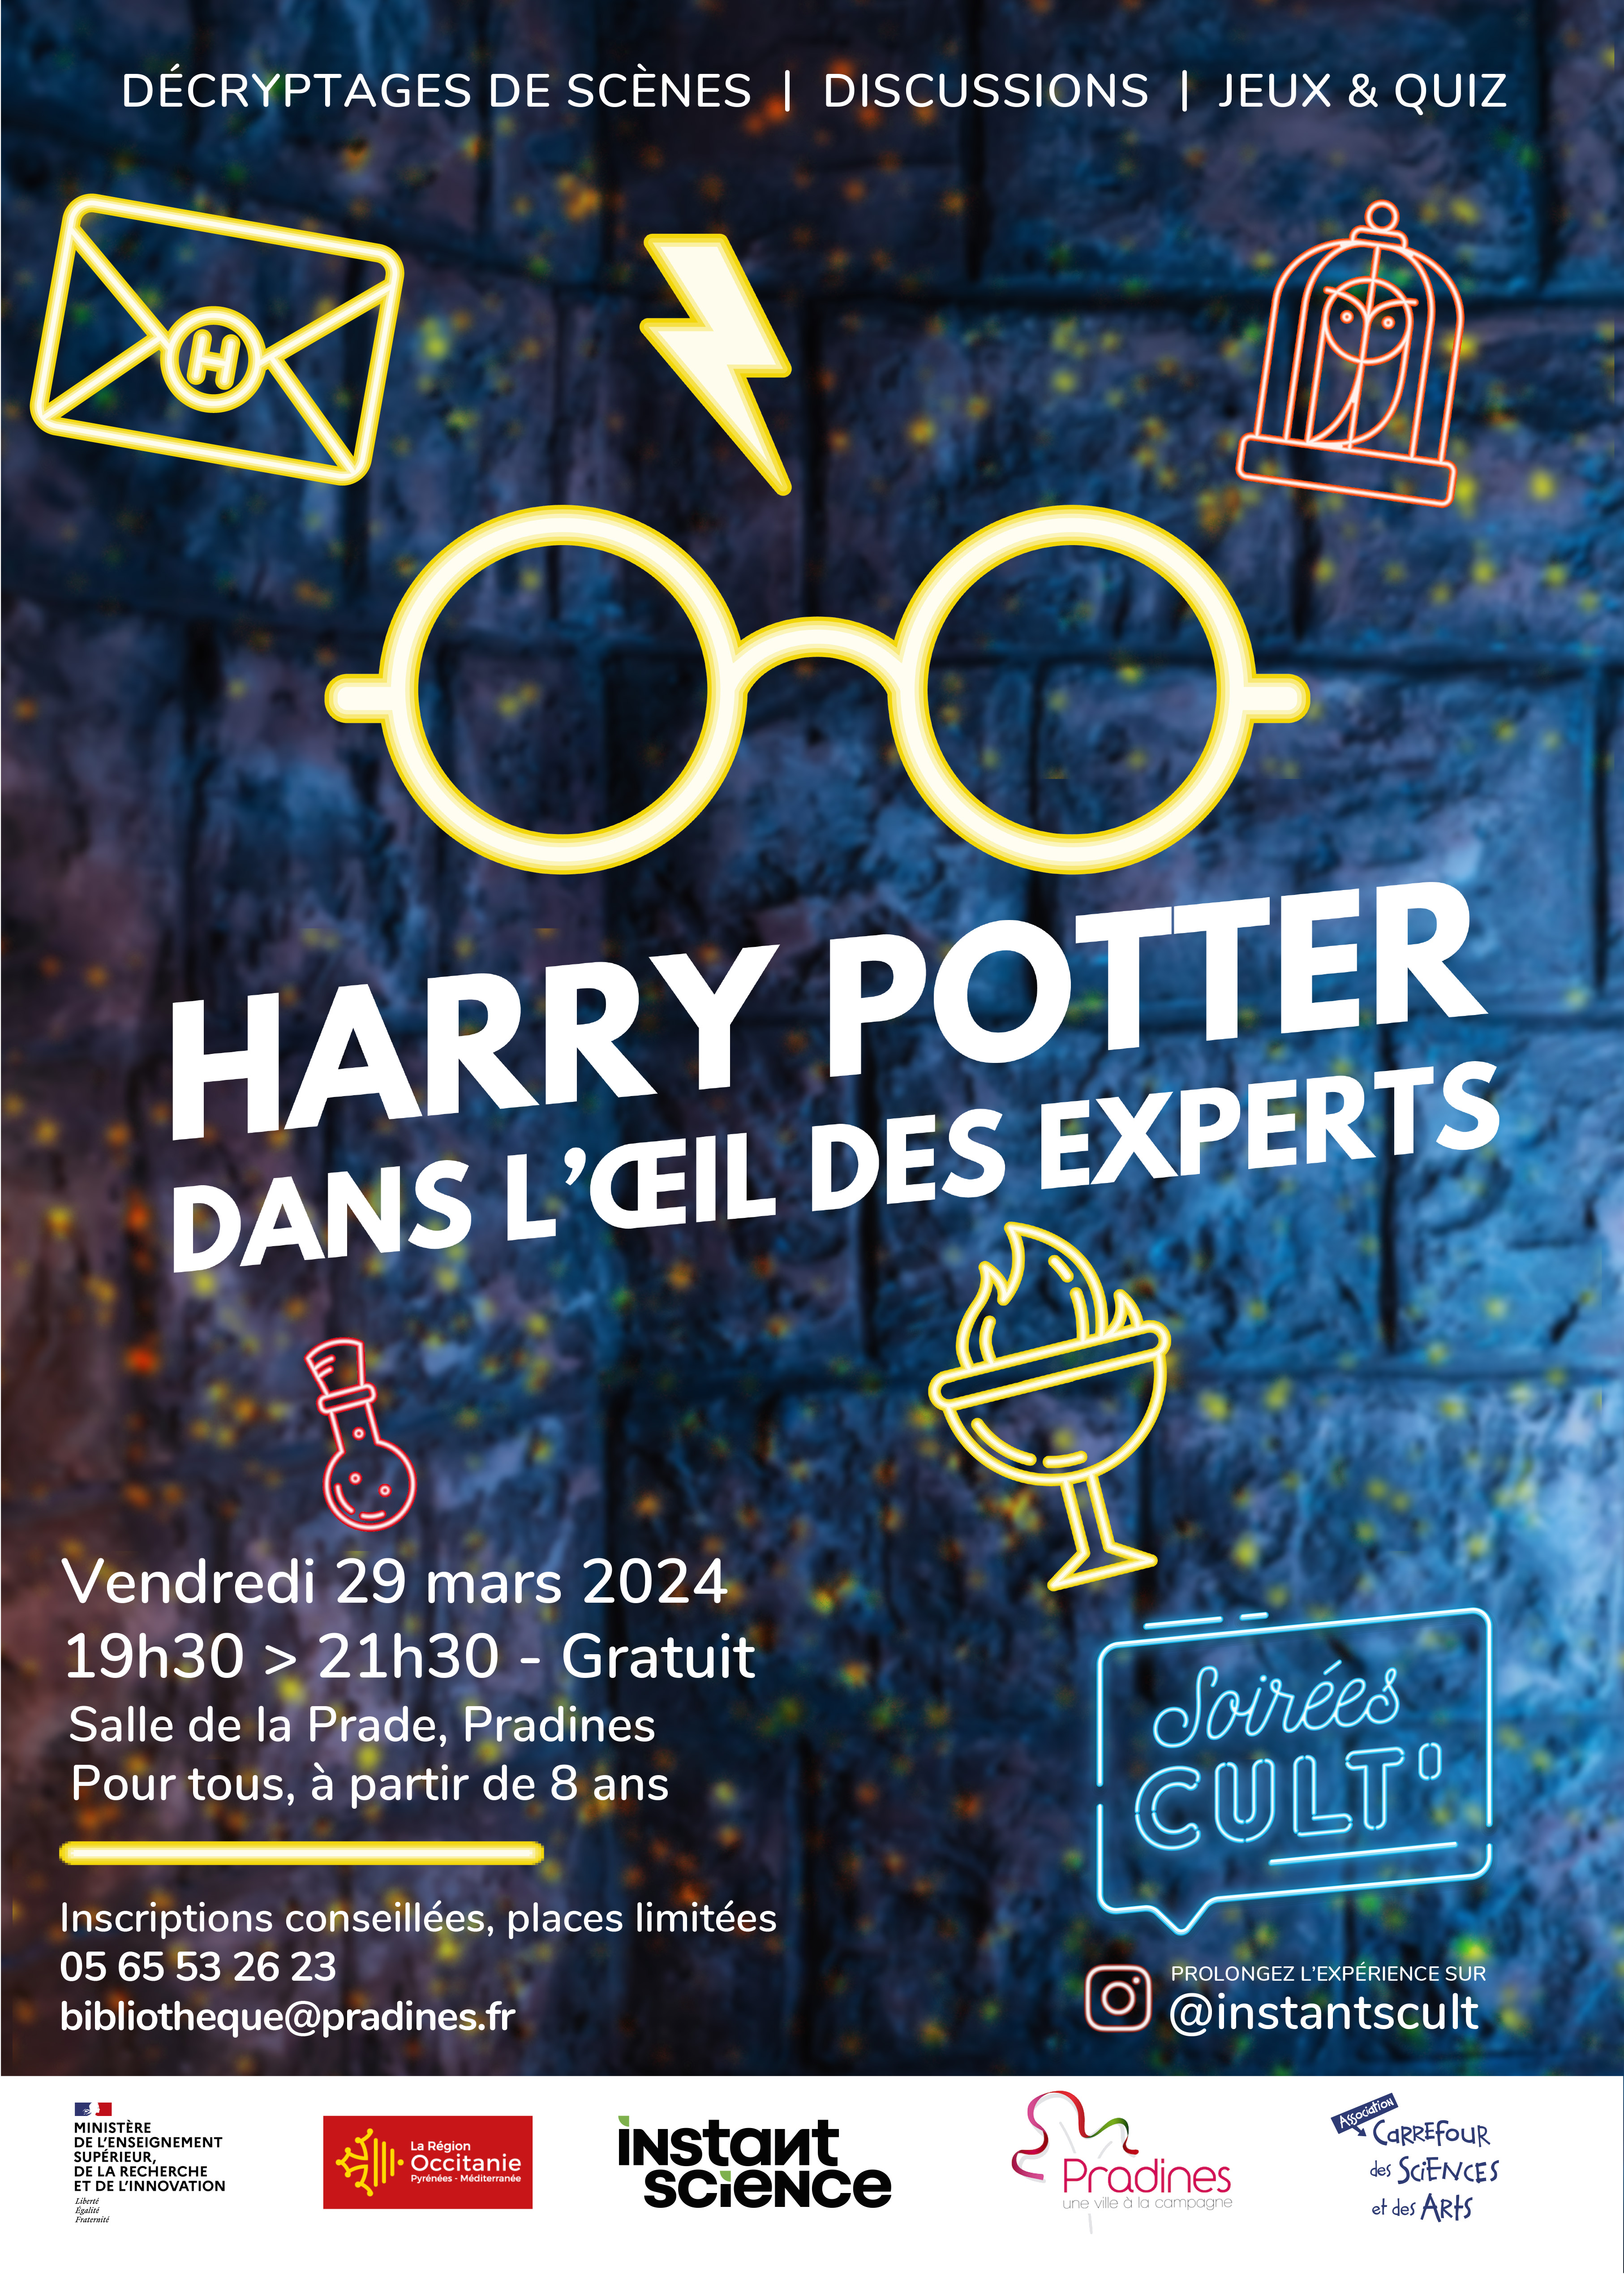 Figeac : Soirée Cult’ : Harry Potter, dans l’œil des experts avec le Carrefour des sciences